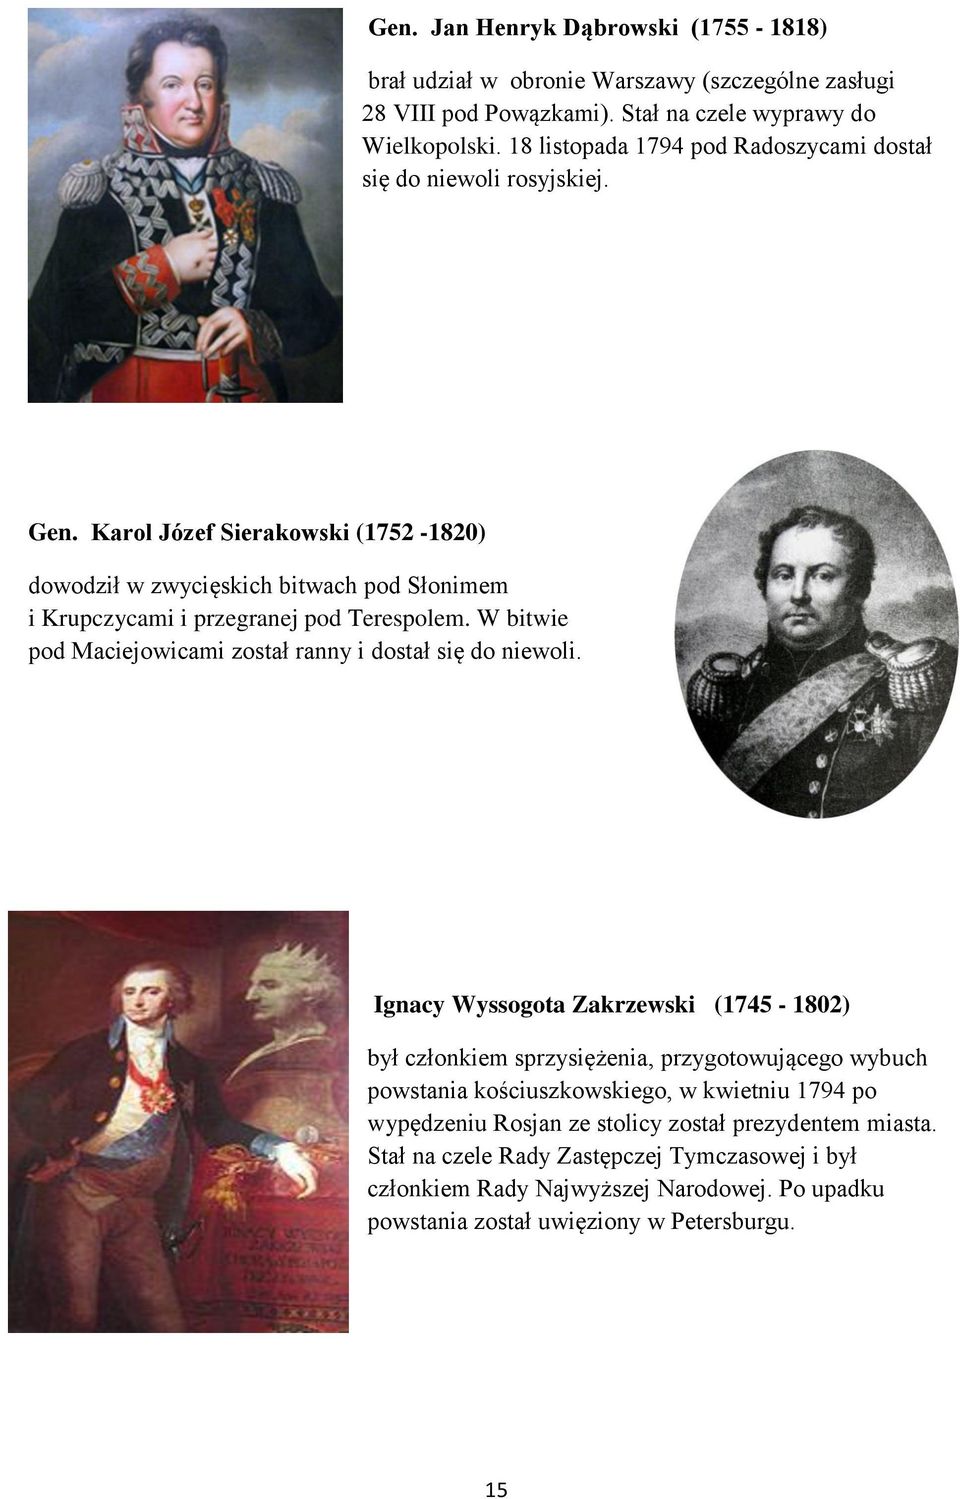 Karol Józef Sierakowski (1752-1820) dowodził w zwycięskich bitwach pod Słonimem i Krupczycami i przegranej pod Terespolem. W bitwie pod Maciejowicami został ranny i dostał się do niewoli.